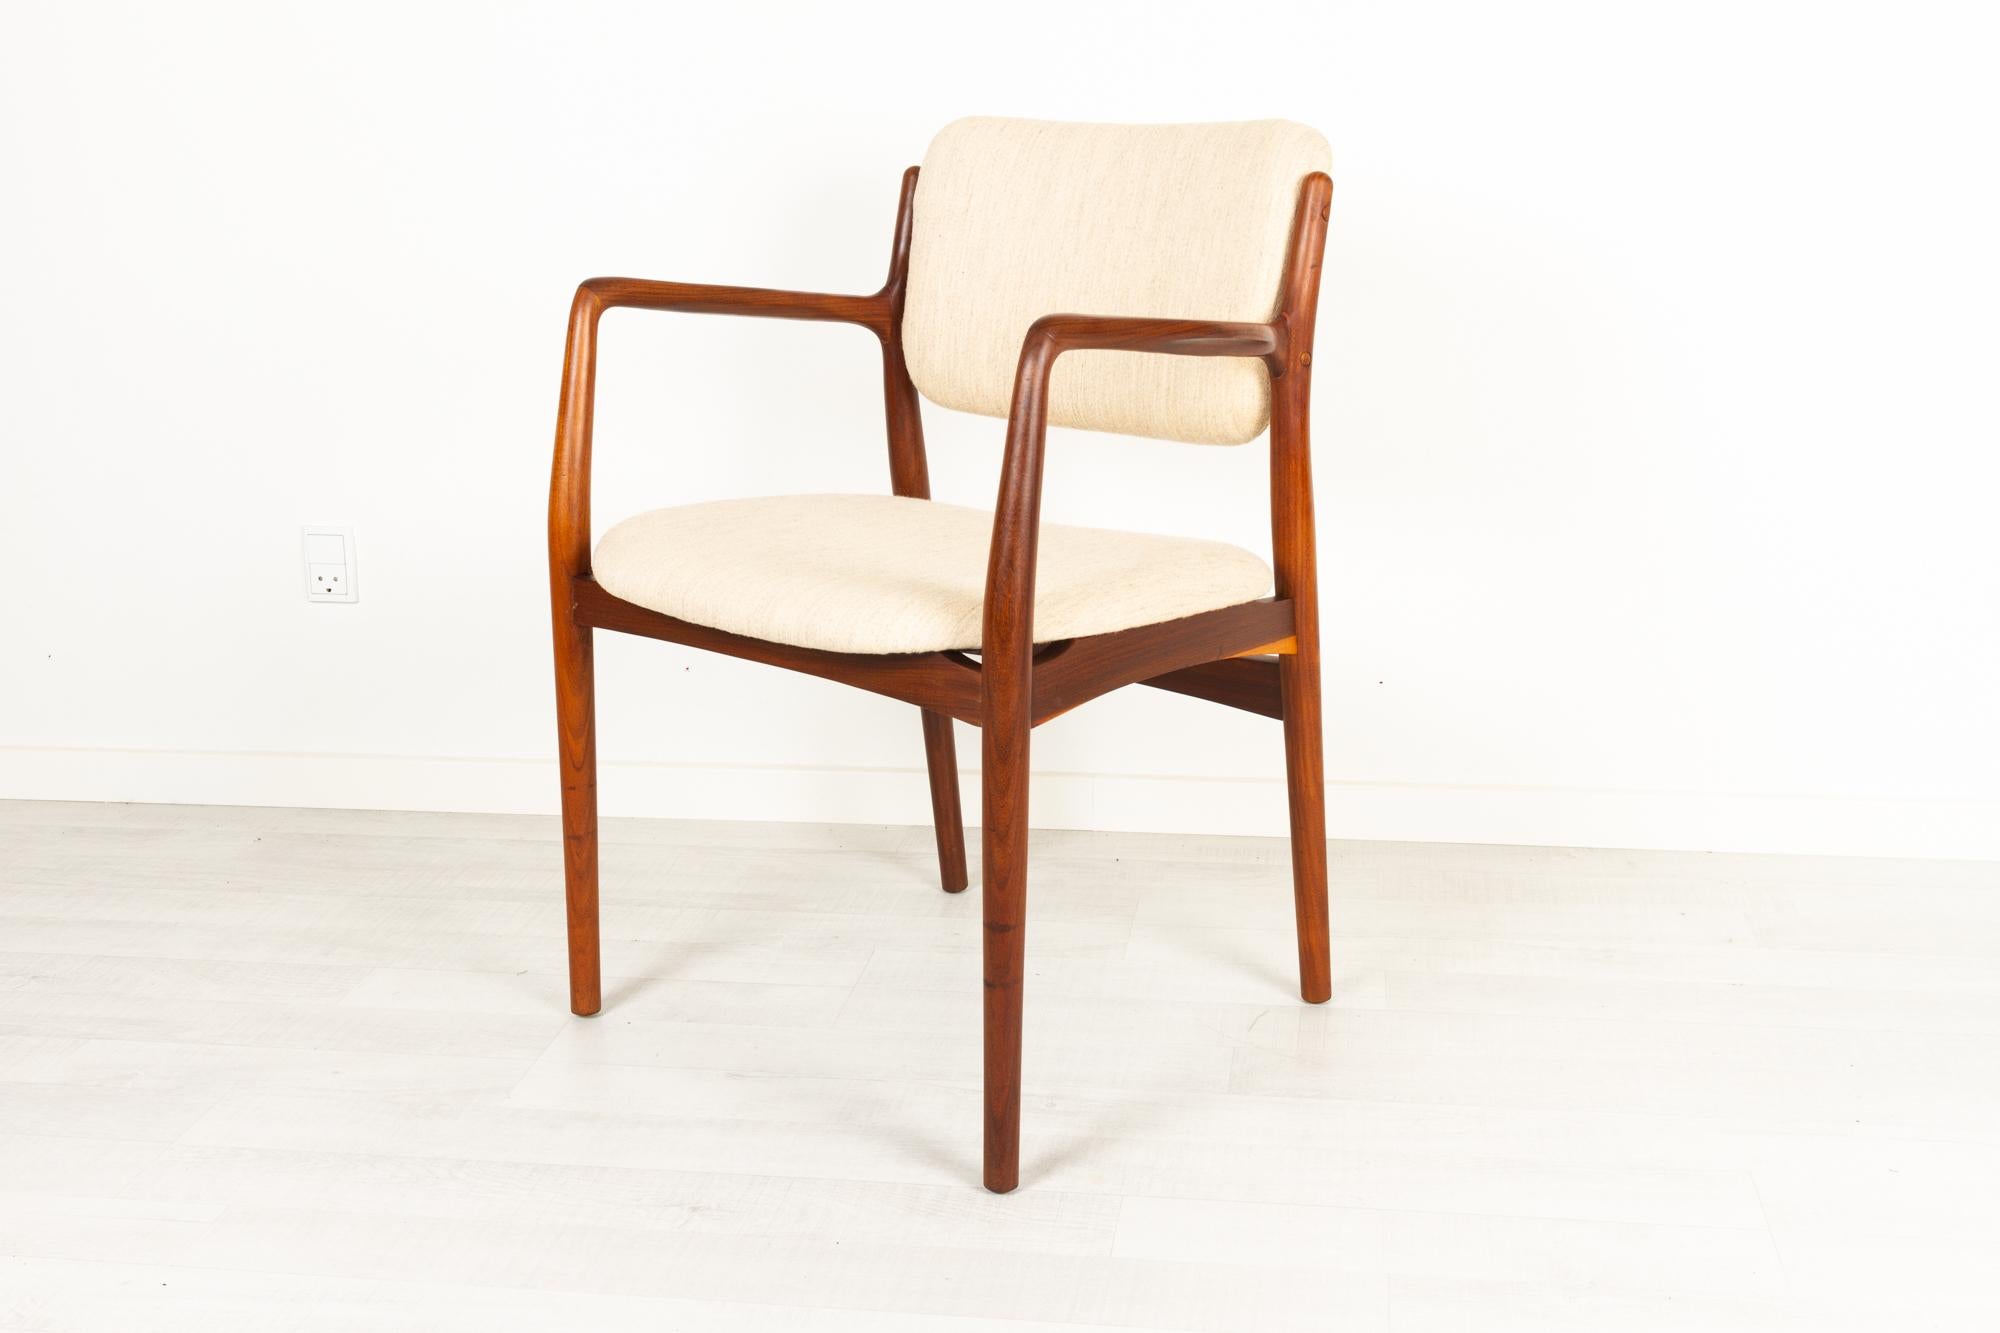 Vieux fauteuil danois en teck 1950s
Élégant et sculptural fauteuil danois moderne du milieu du siècle en teck massif. Assise et dossier retapissés en tissu de laine beige clair. Pieds ronds et effilés. Accoudoirs évasés.
Très beau teck avec un